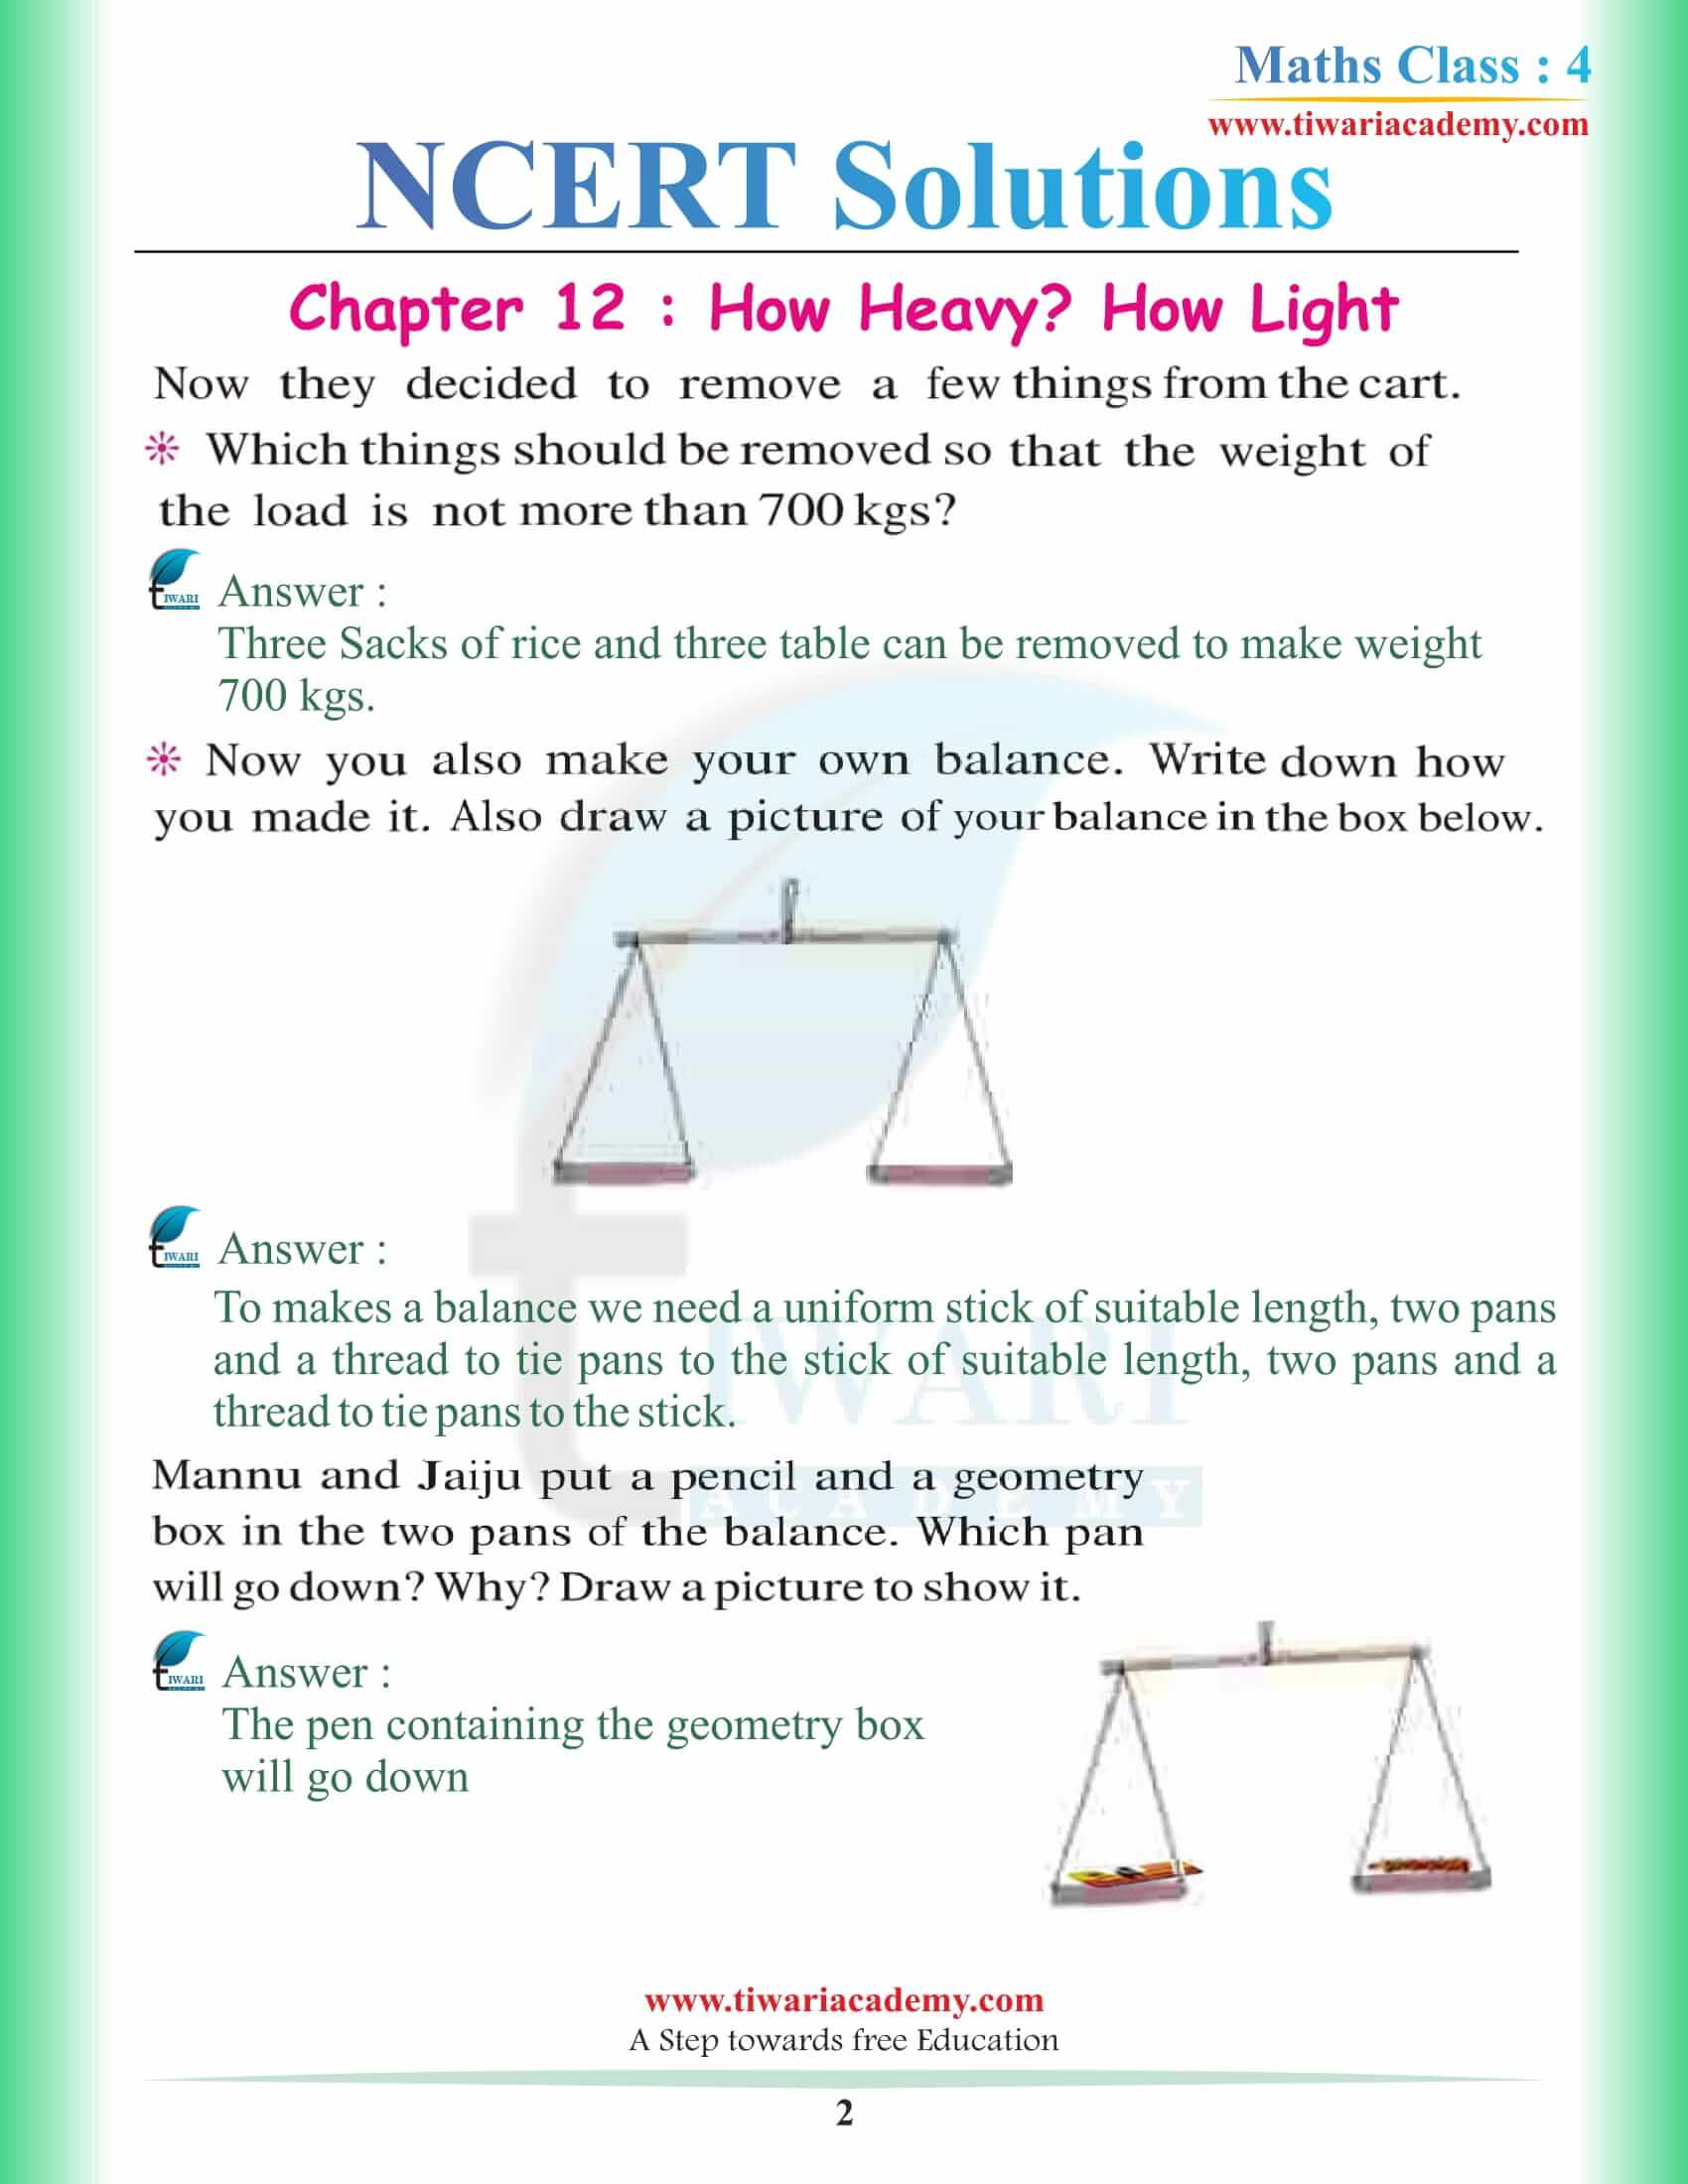 NCERT Solutions for Class 4 Maths Chapter 12